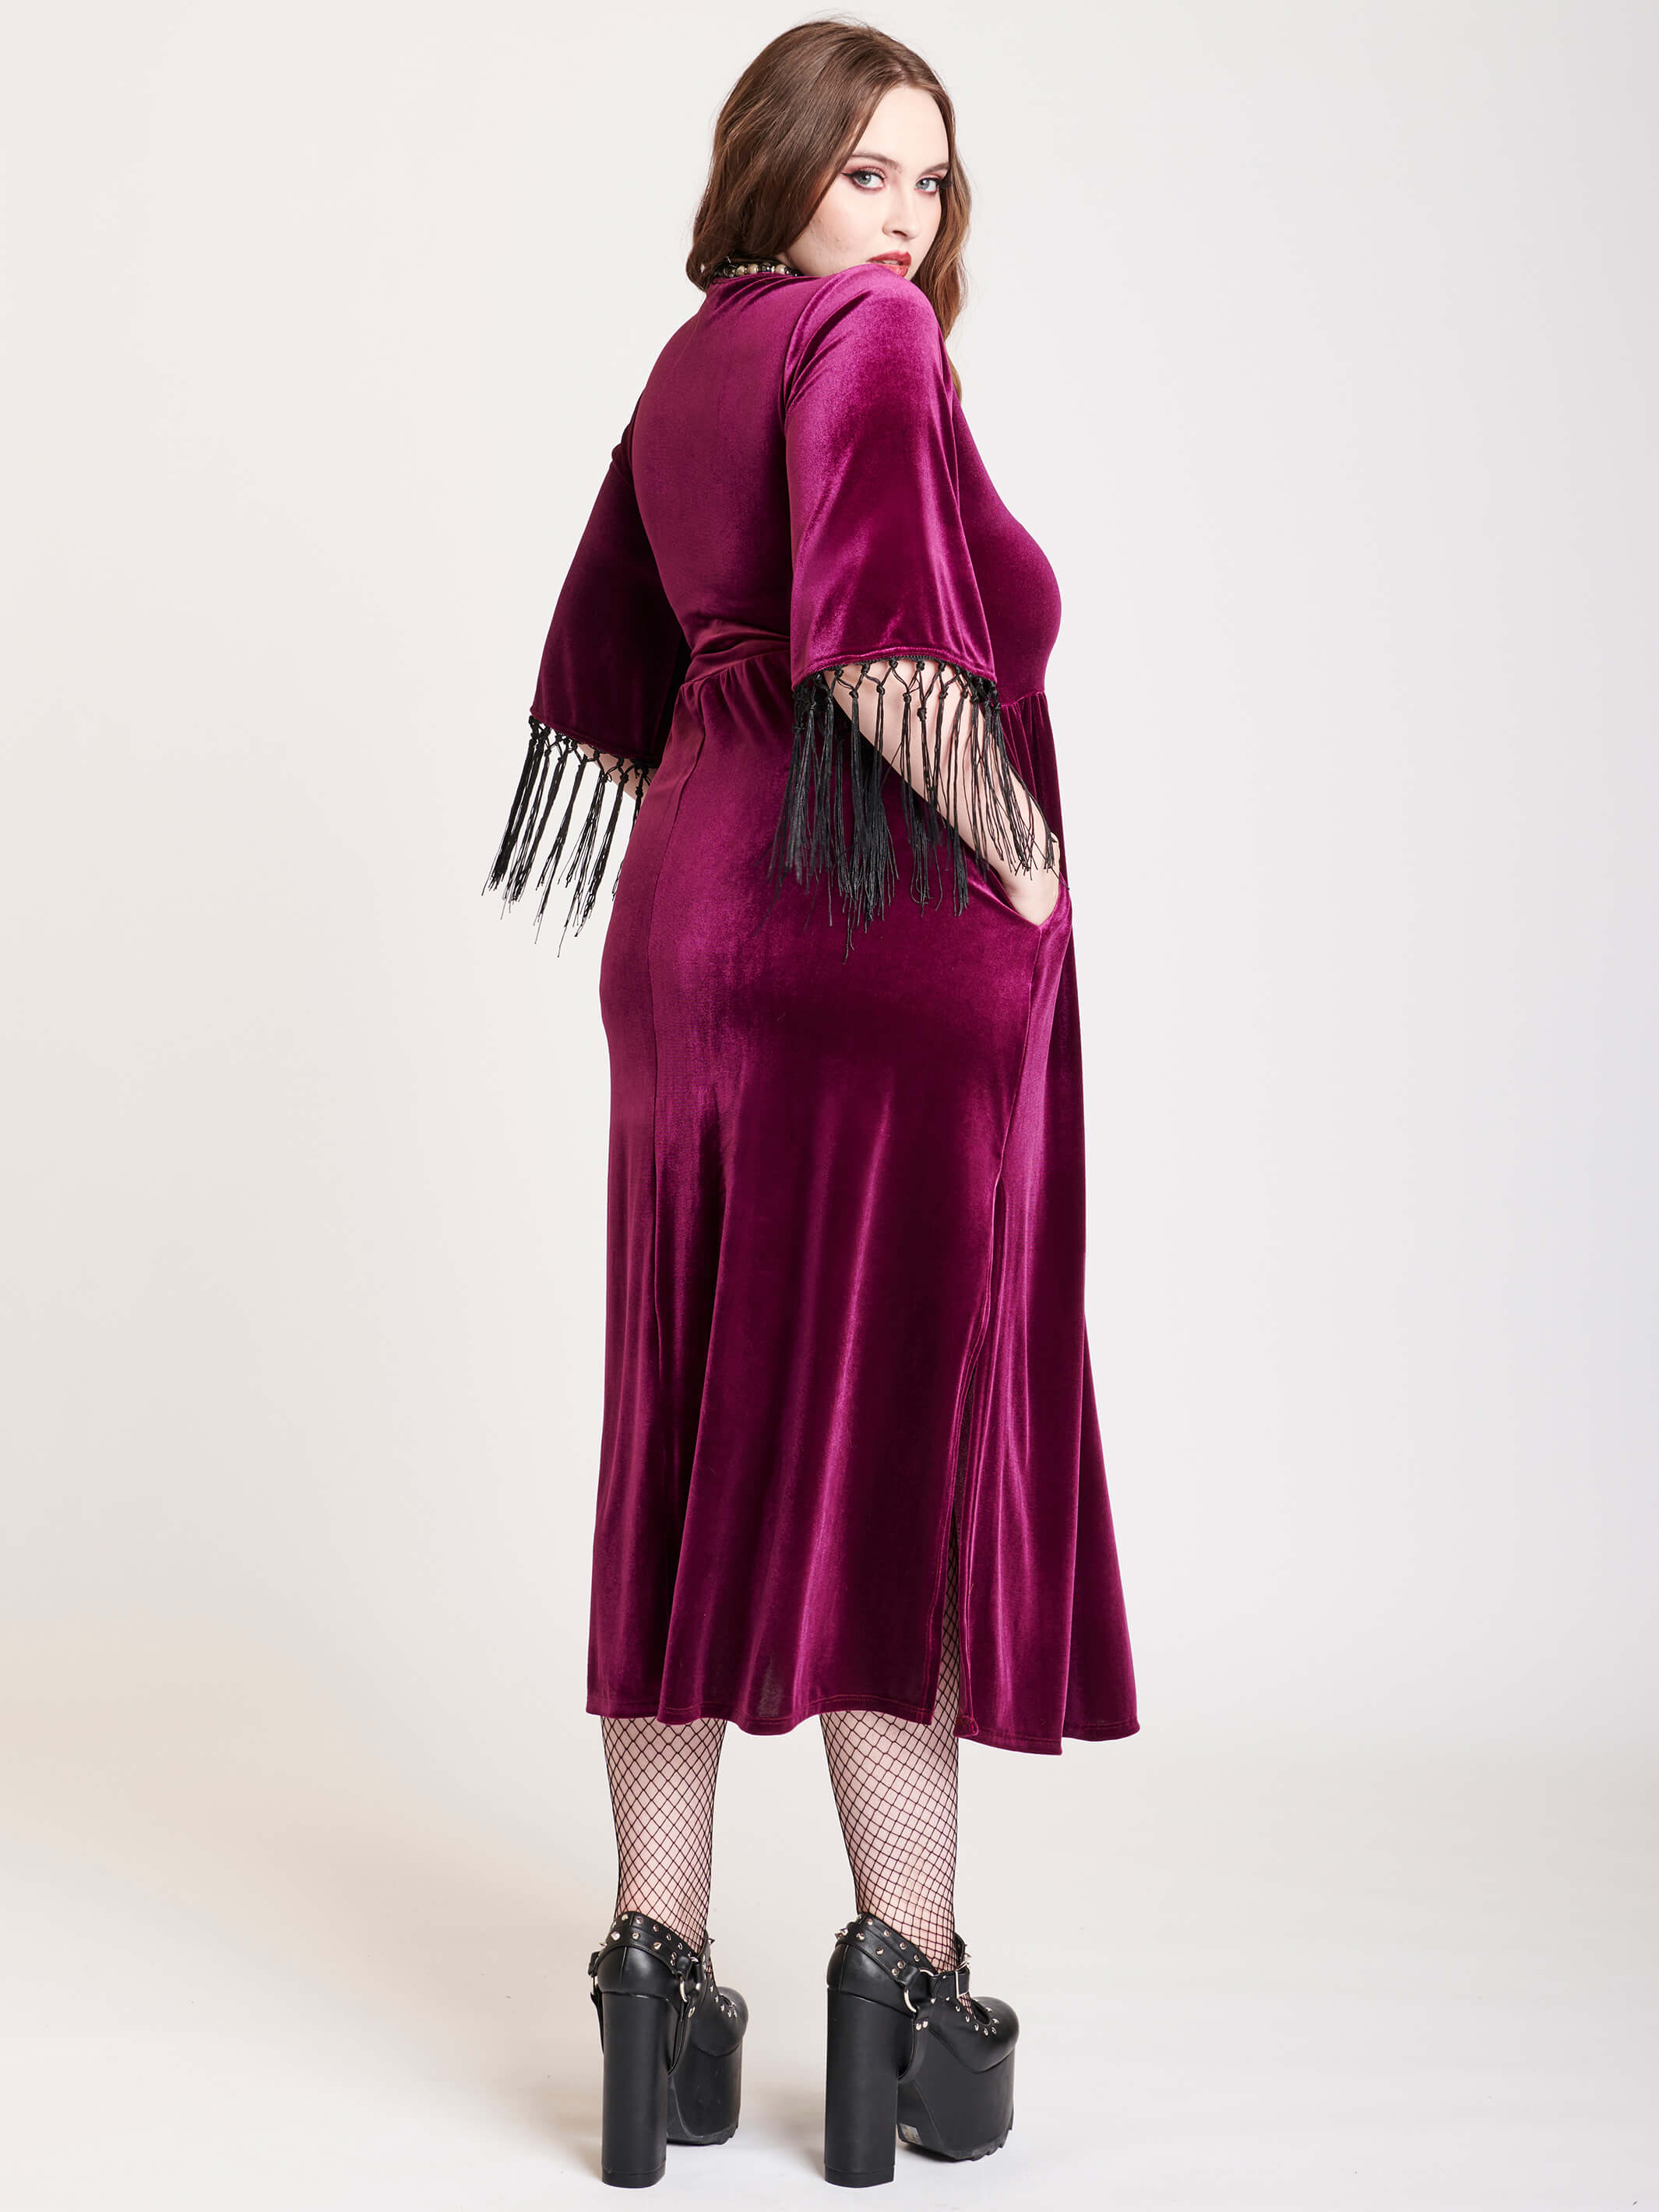 burgundy velvet dress with fringe at cleeve hem